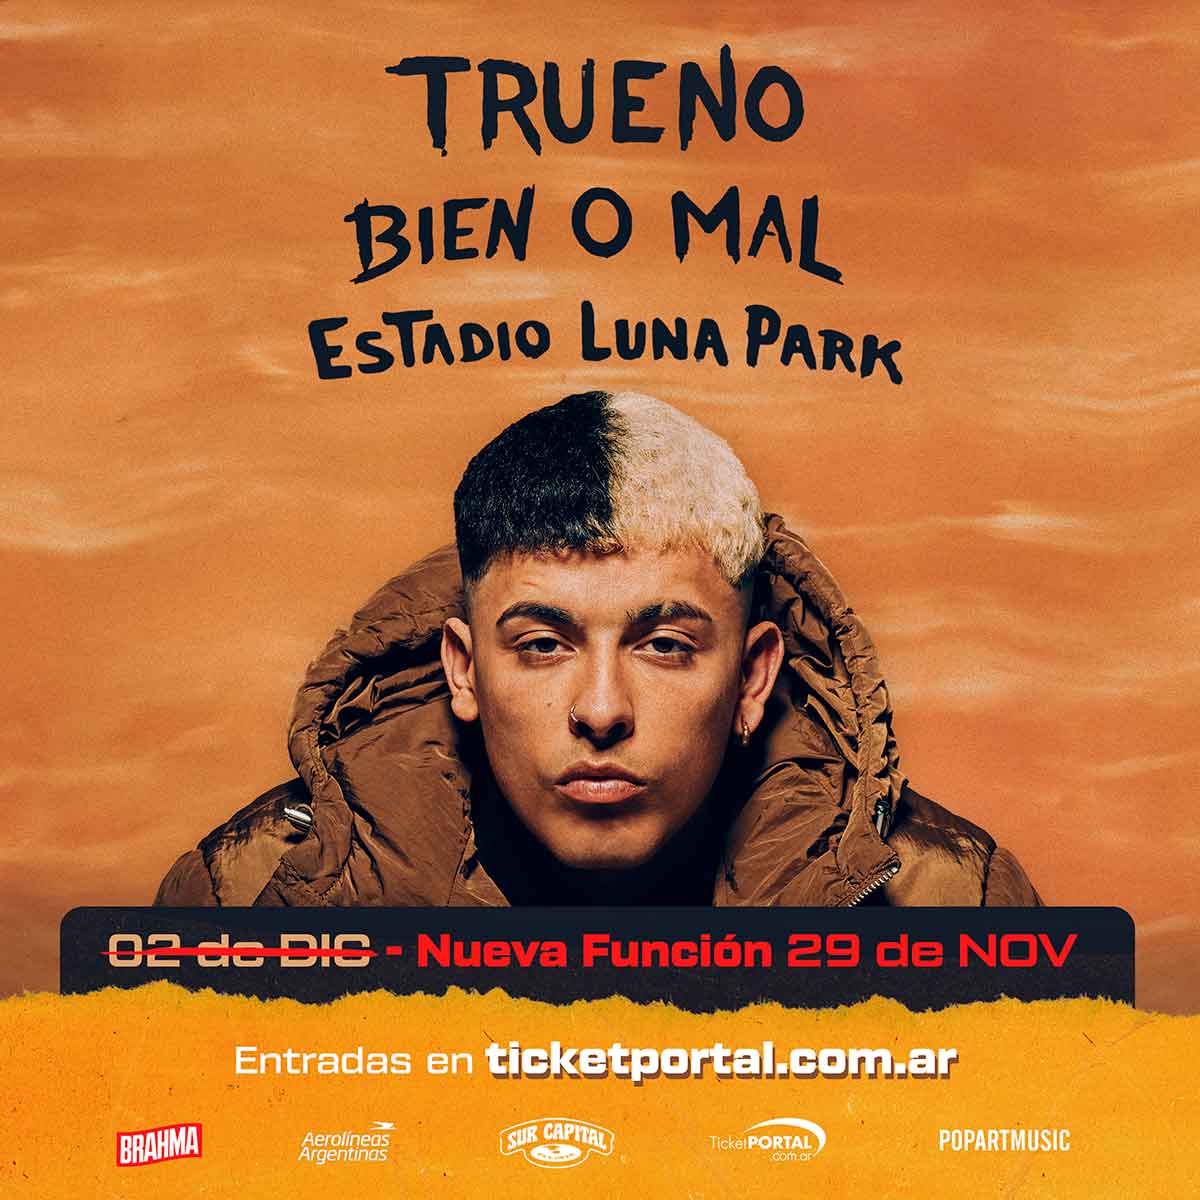 Trueno anuncia una nueva función en el Luna Park